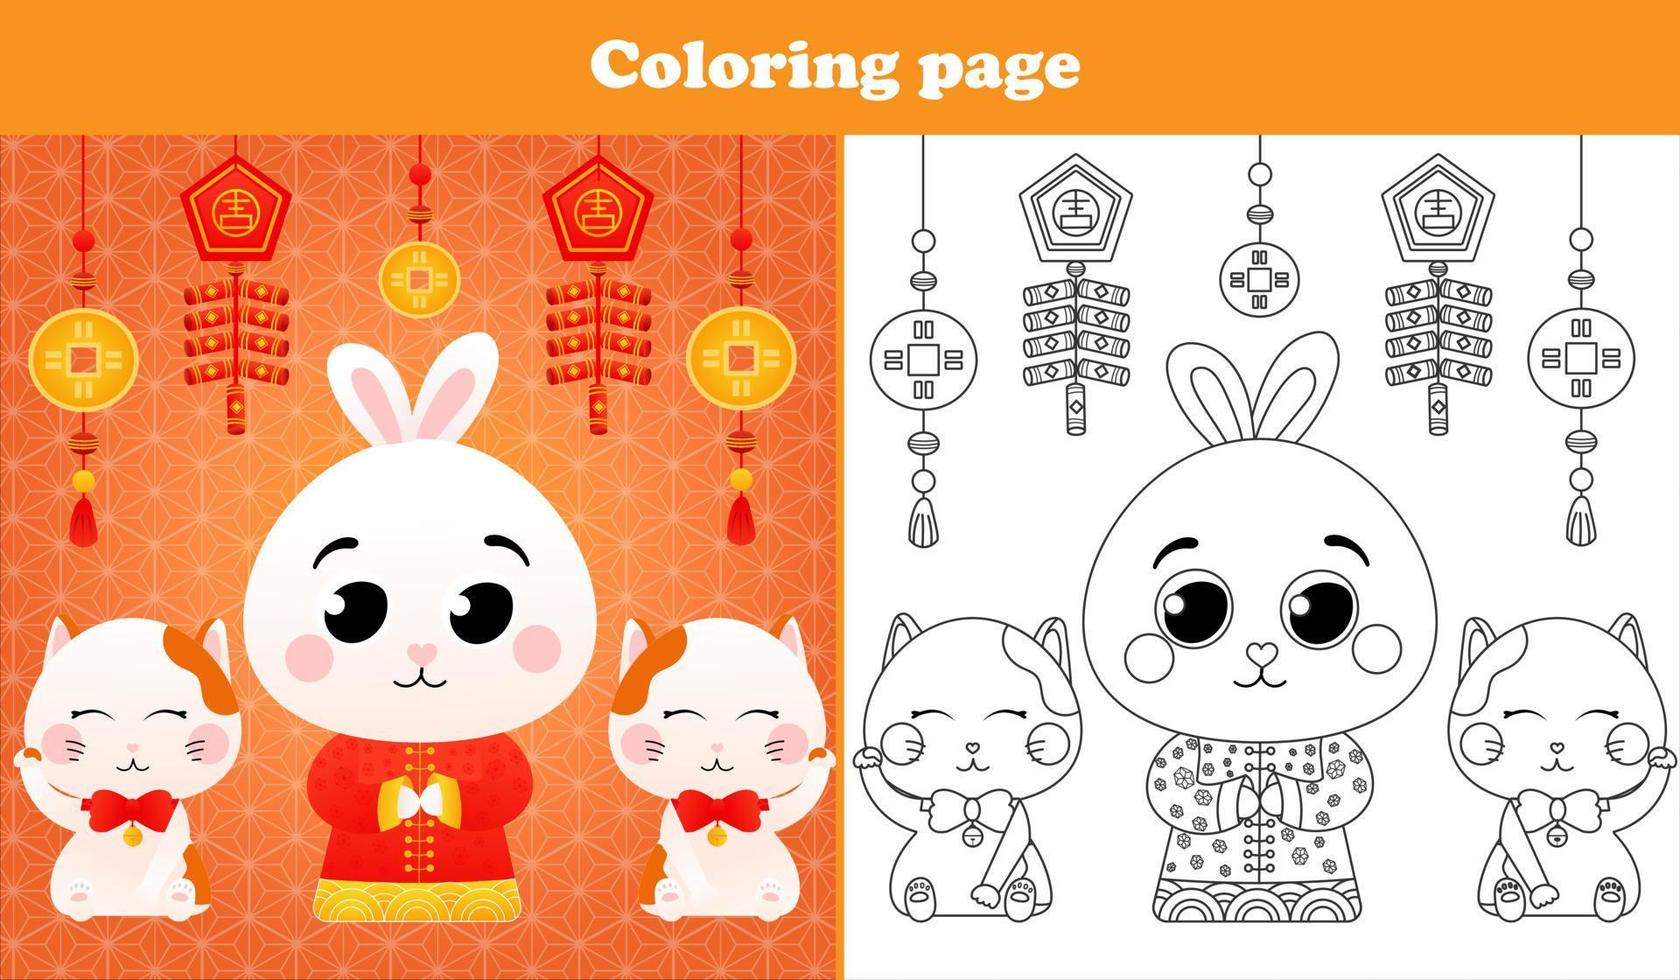 planilha para impressão com página para colorir para crianças com coelho em traje tradicional chinês com lanterna e gatos da sorte em estilo cartoon vetor